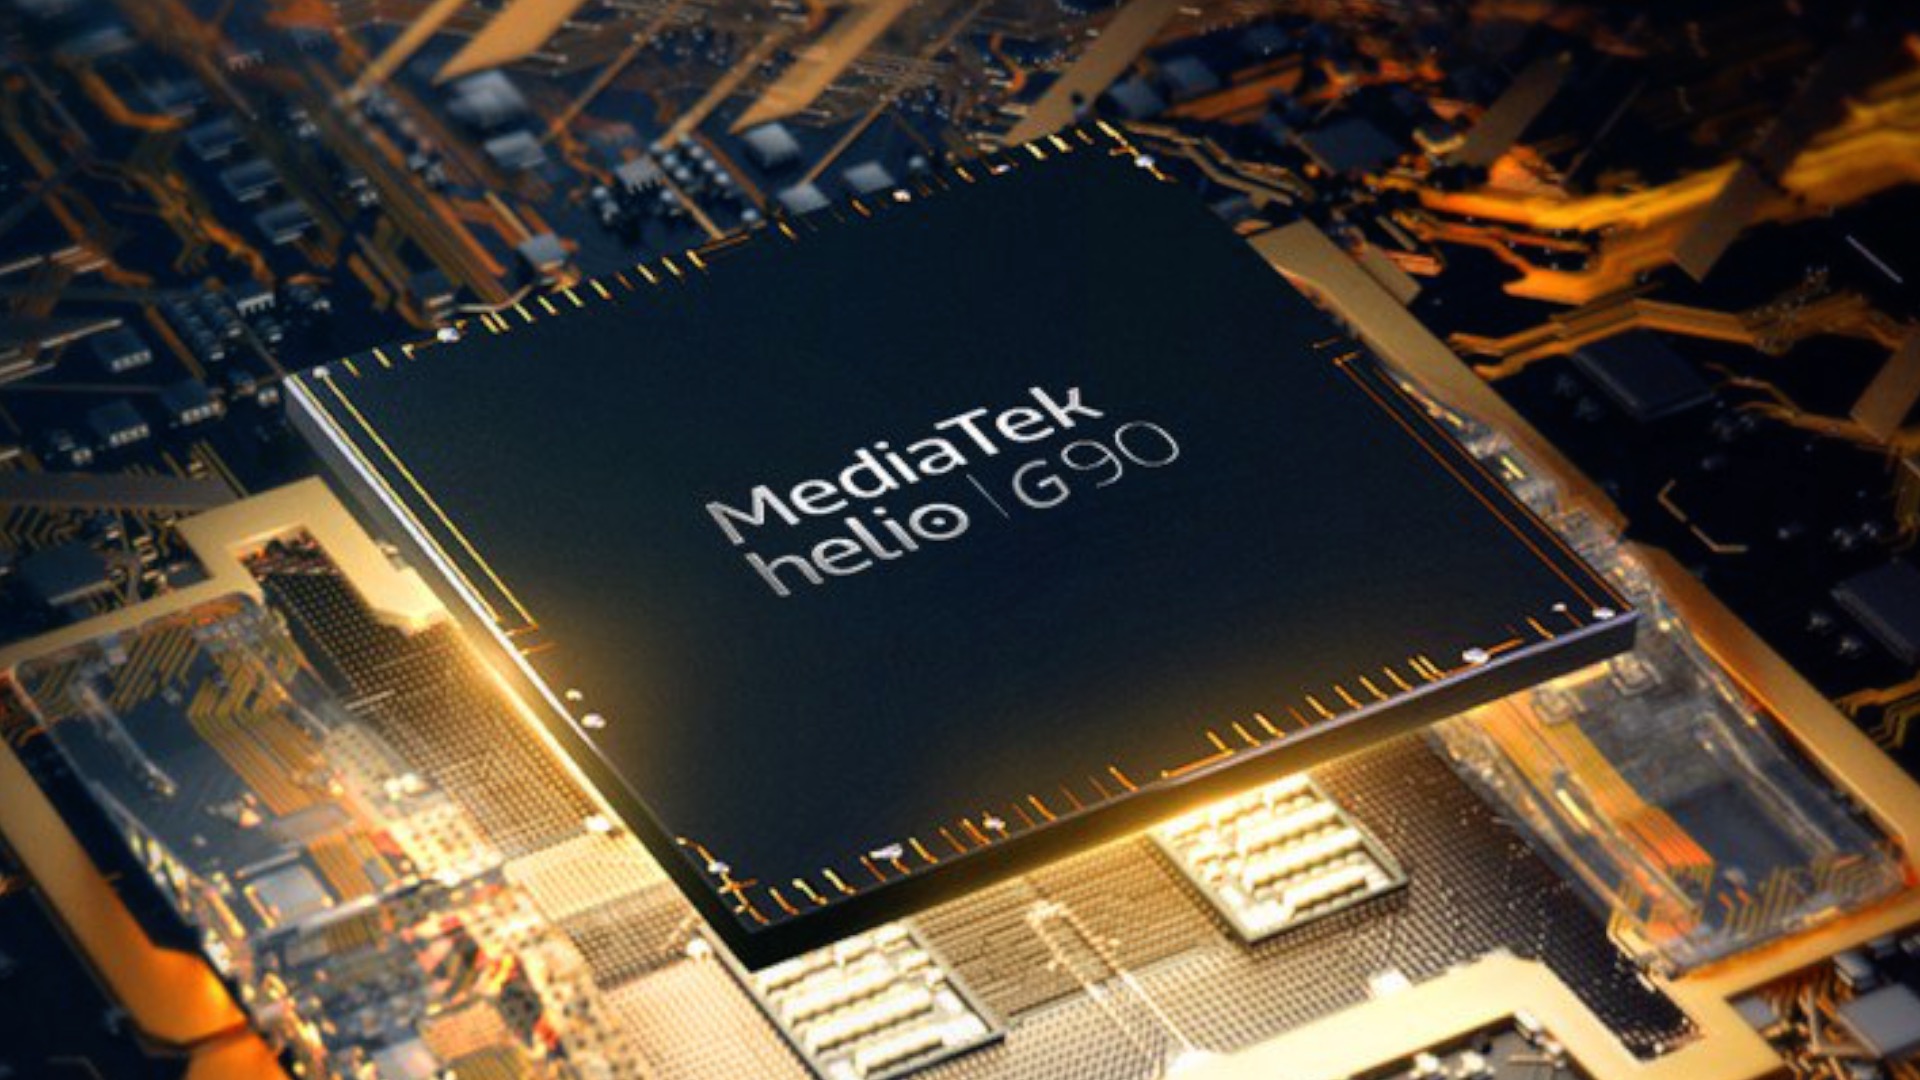 MediaTek Helio G70, un nuevo procesador “económico” para gaming